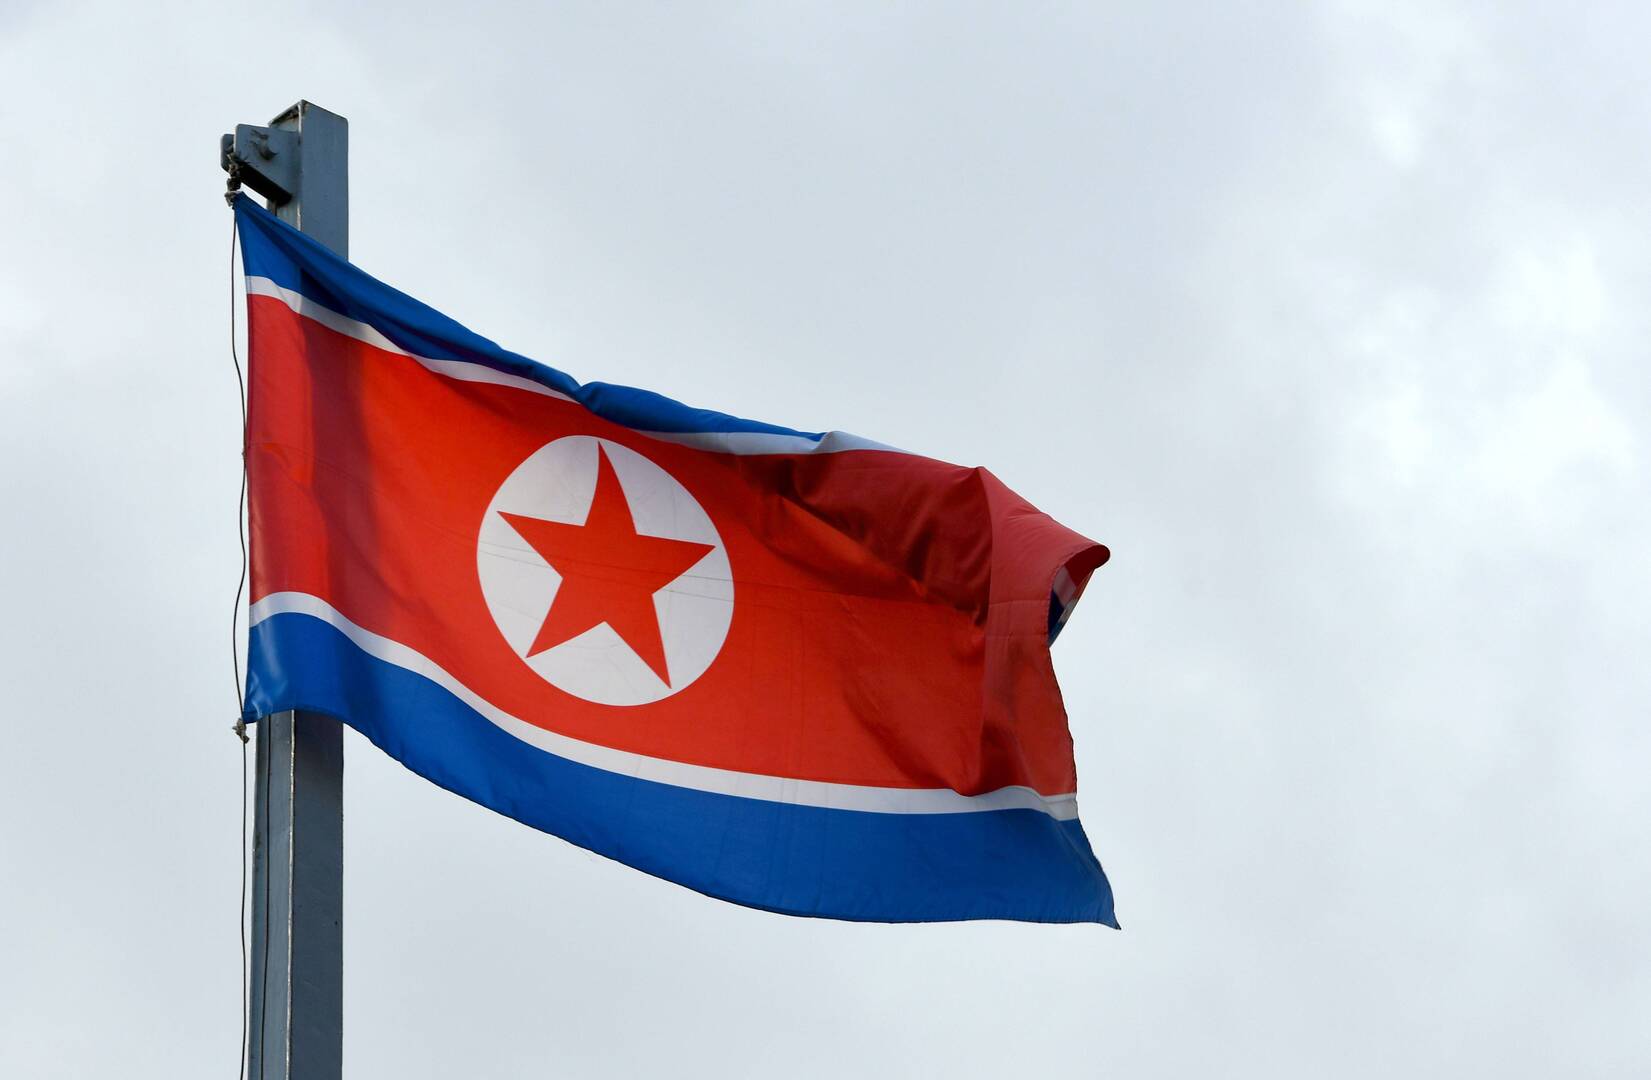 سيئول تكشف عن موعد إجراء كوريا الشمالية لتجربتها النووية السابعة